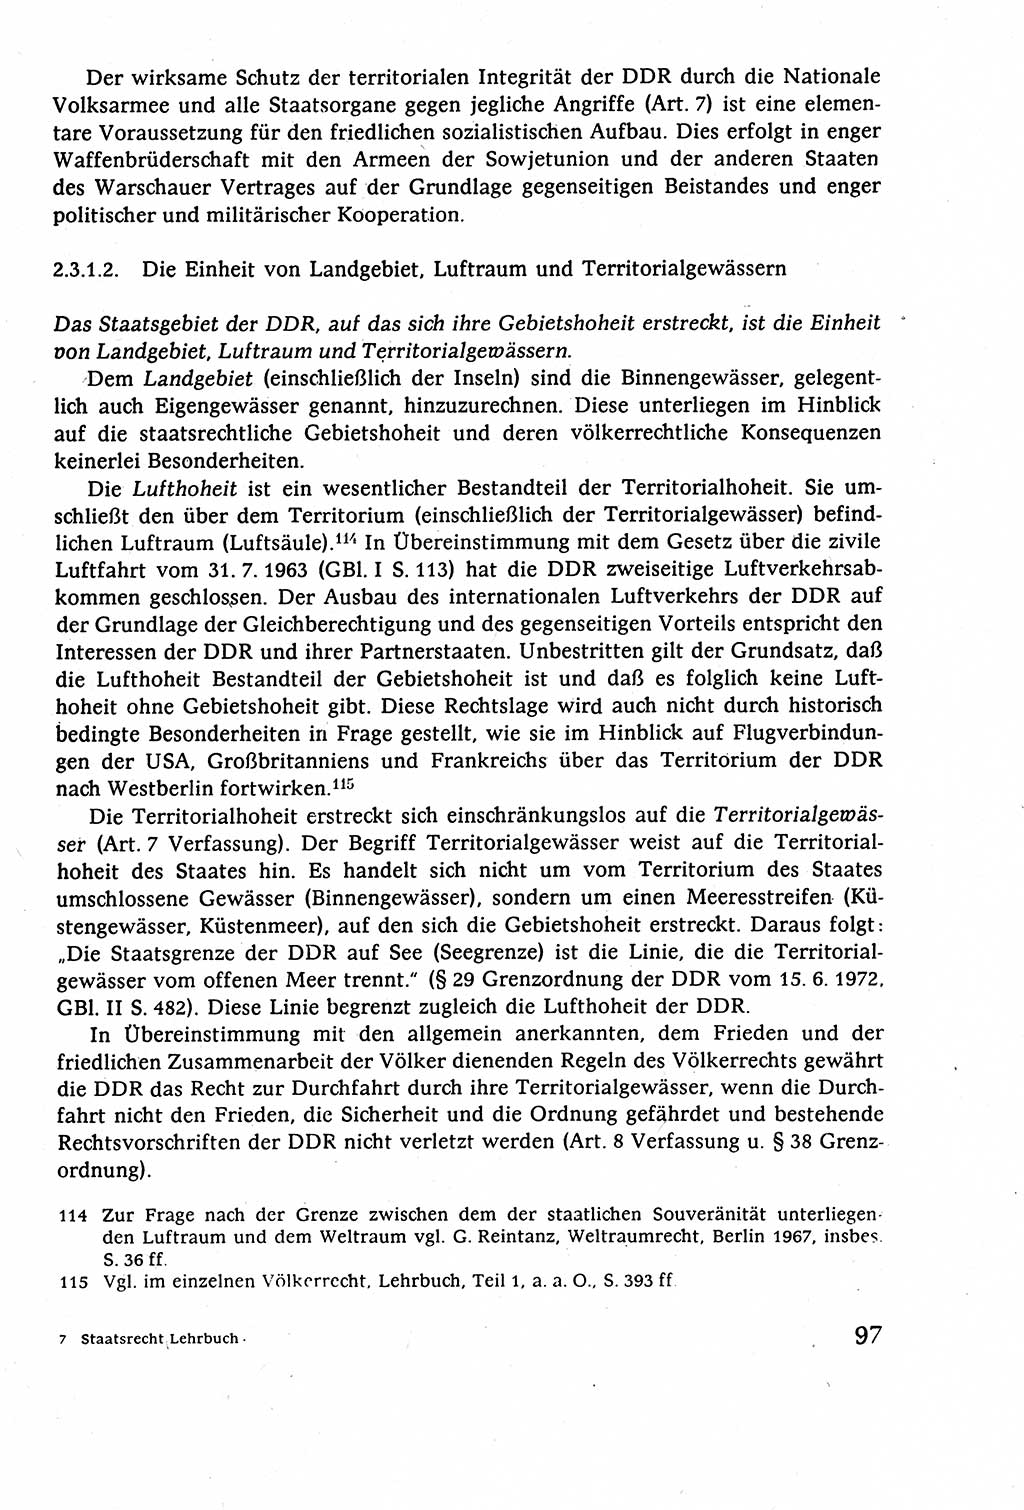 Staatsrecht der DDR (Deutsche Demokratische Republik), Lehrbuch 1977, Seite 97 (St.-R. DDR Lb. 1977, S. 97)